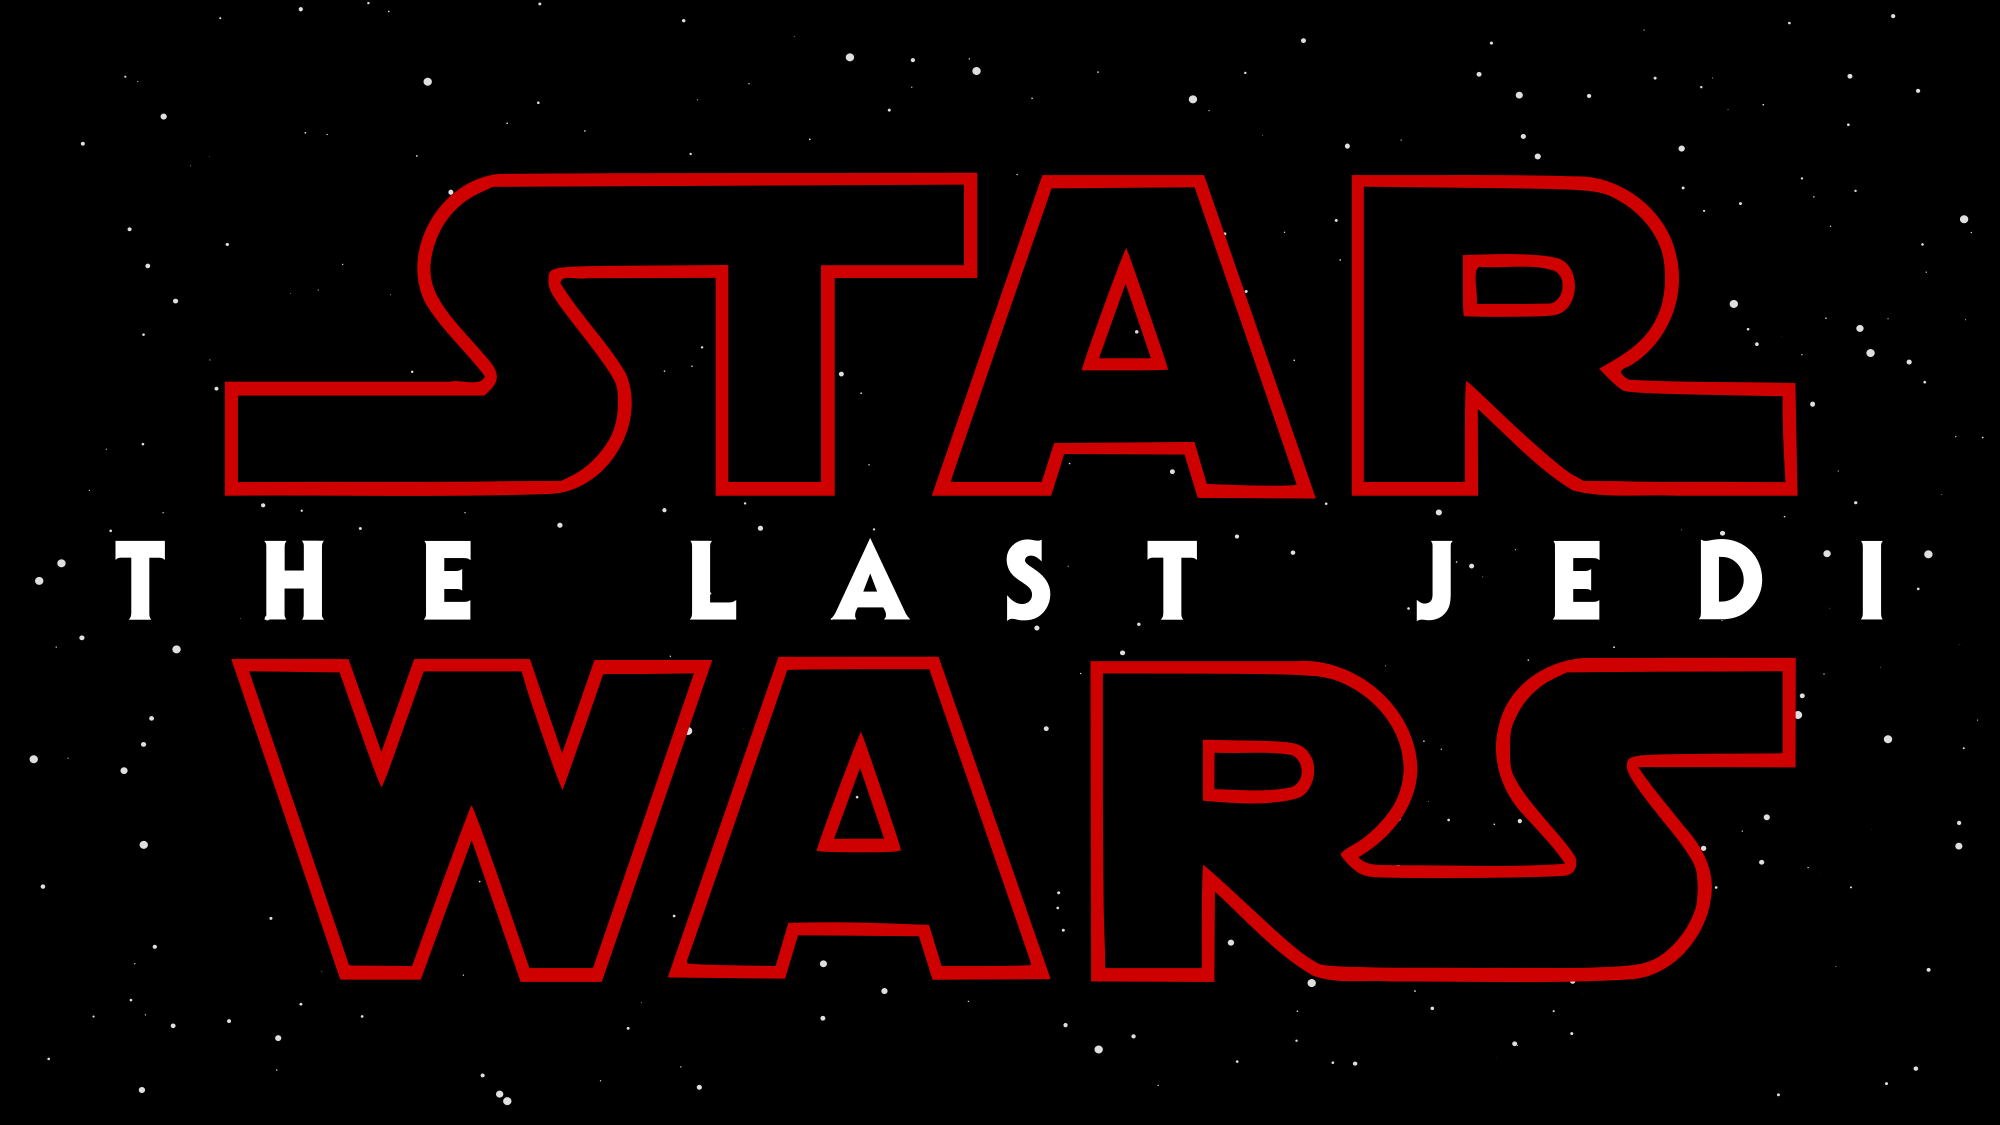 Star Wars the last Jedi